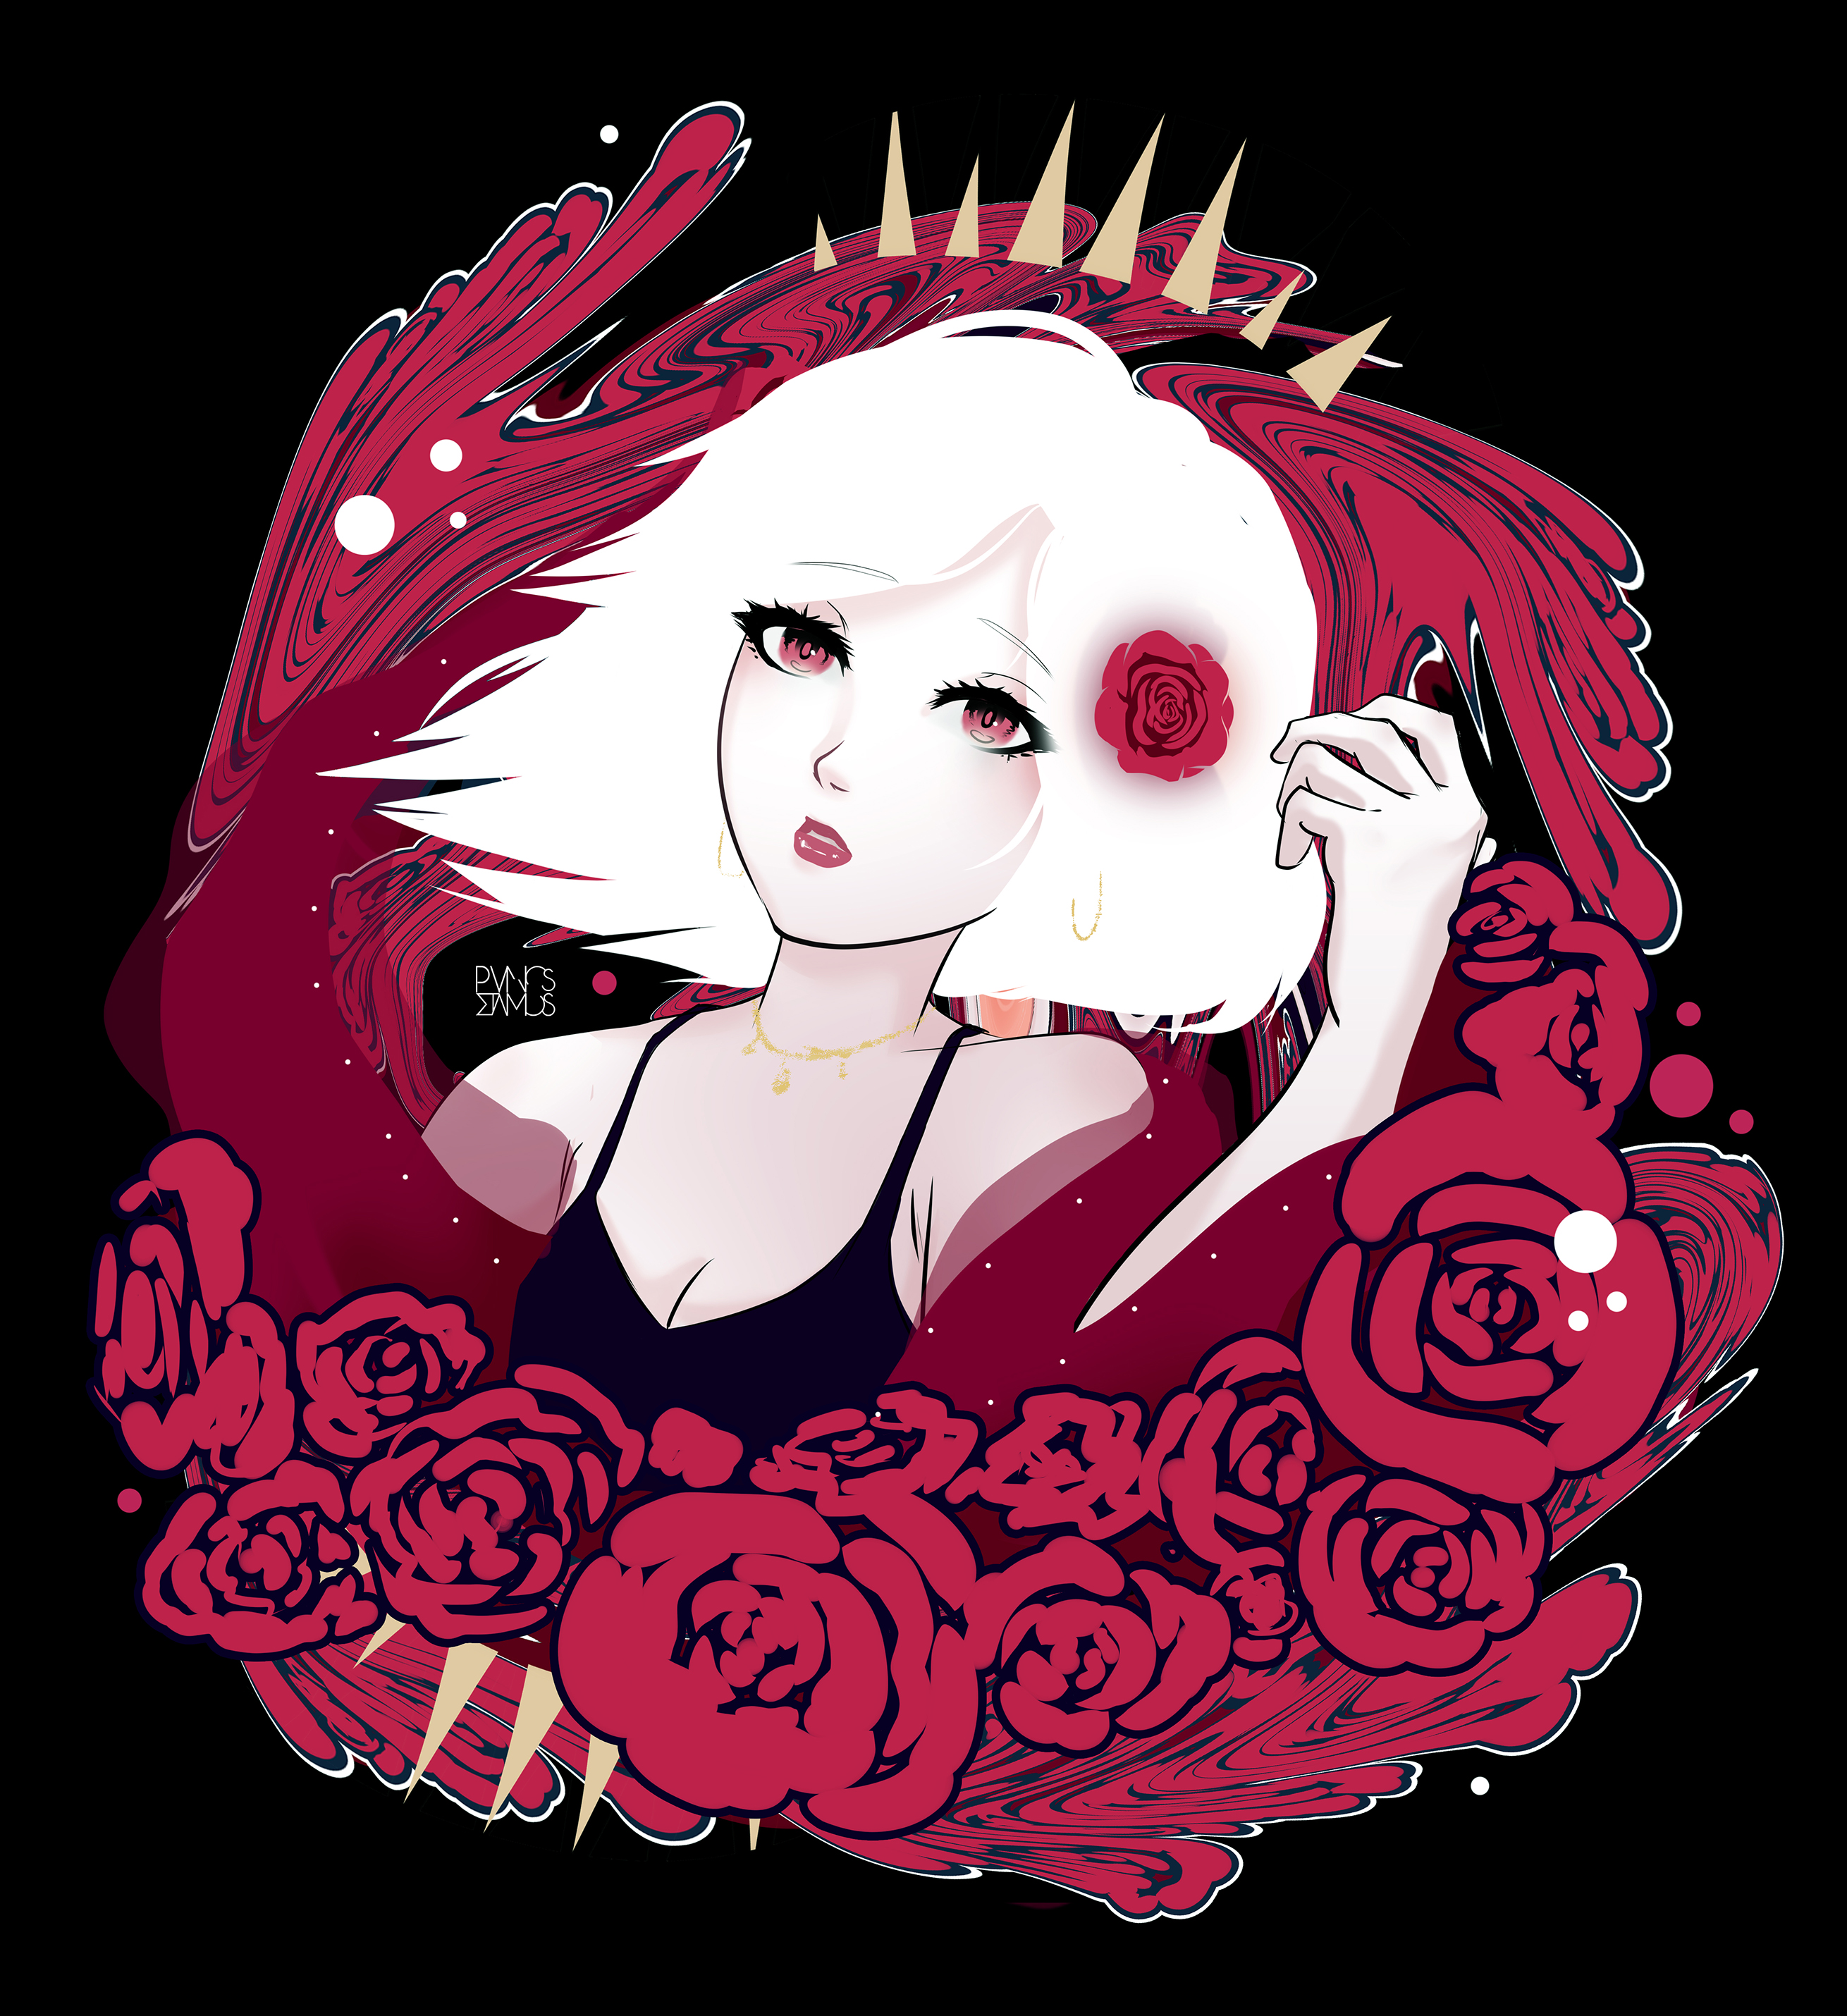 Anime Girls Roses White Hair Red Fantasy Art Illustration Digital Art Love Anime 2620x2860